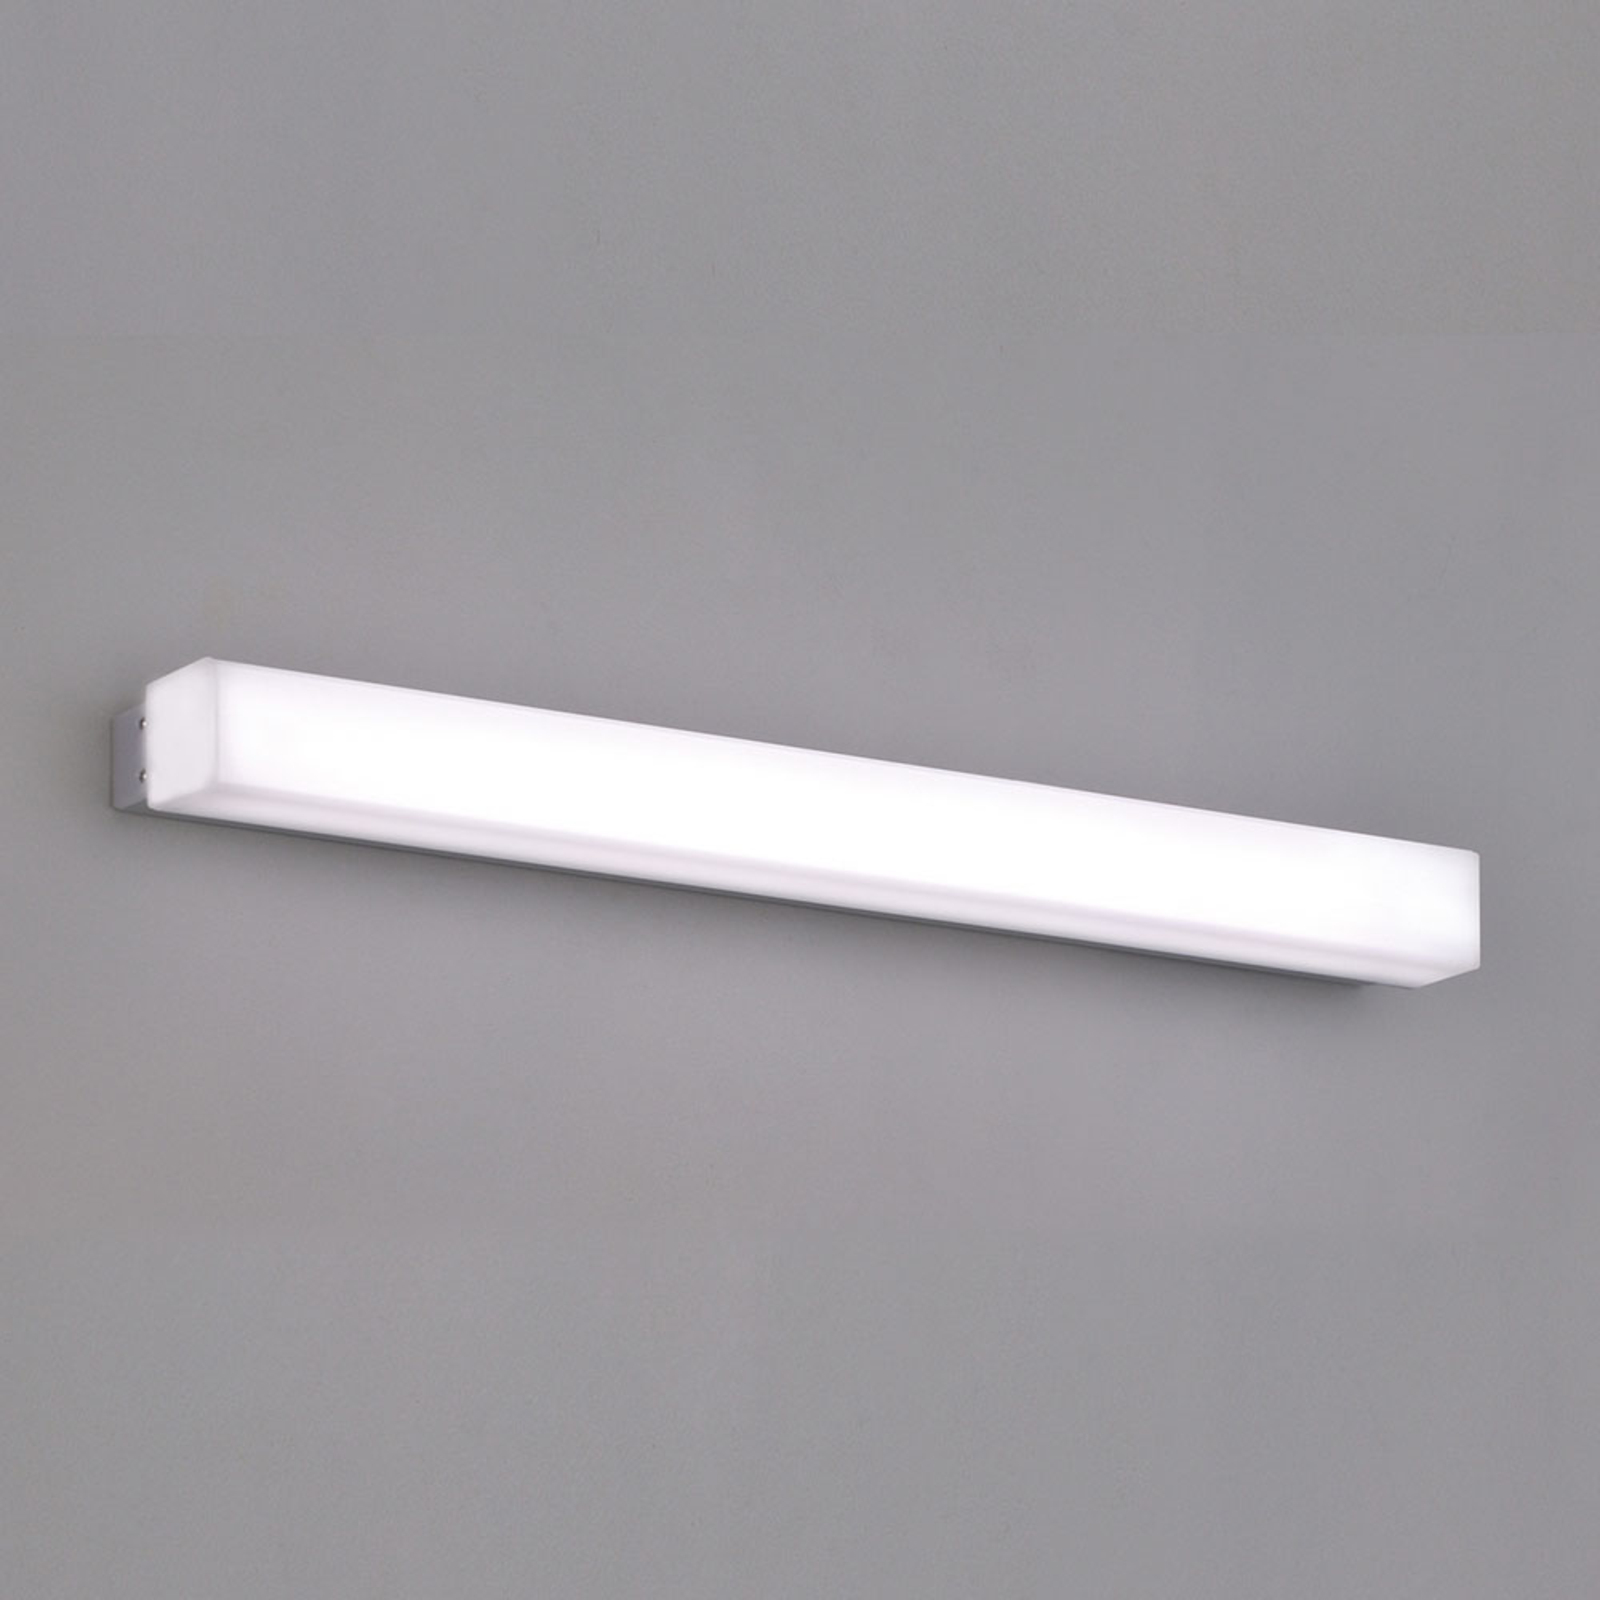 Box LED-væglampe til badet, 3.000 K, bredde 59 cm